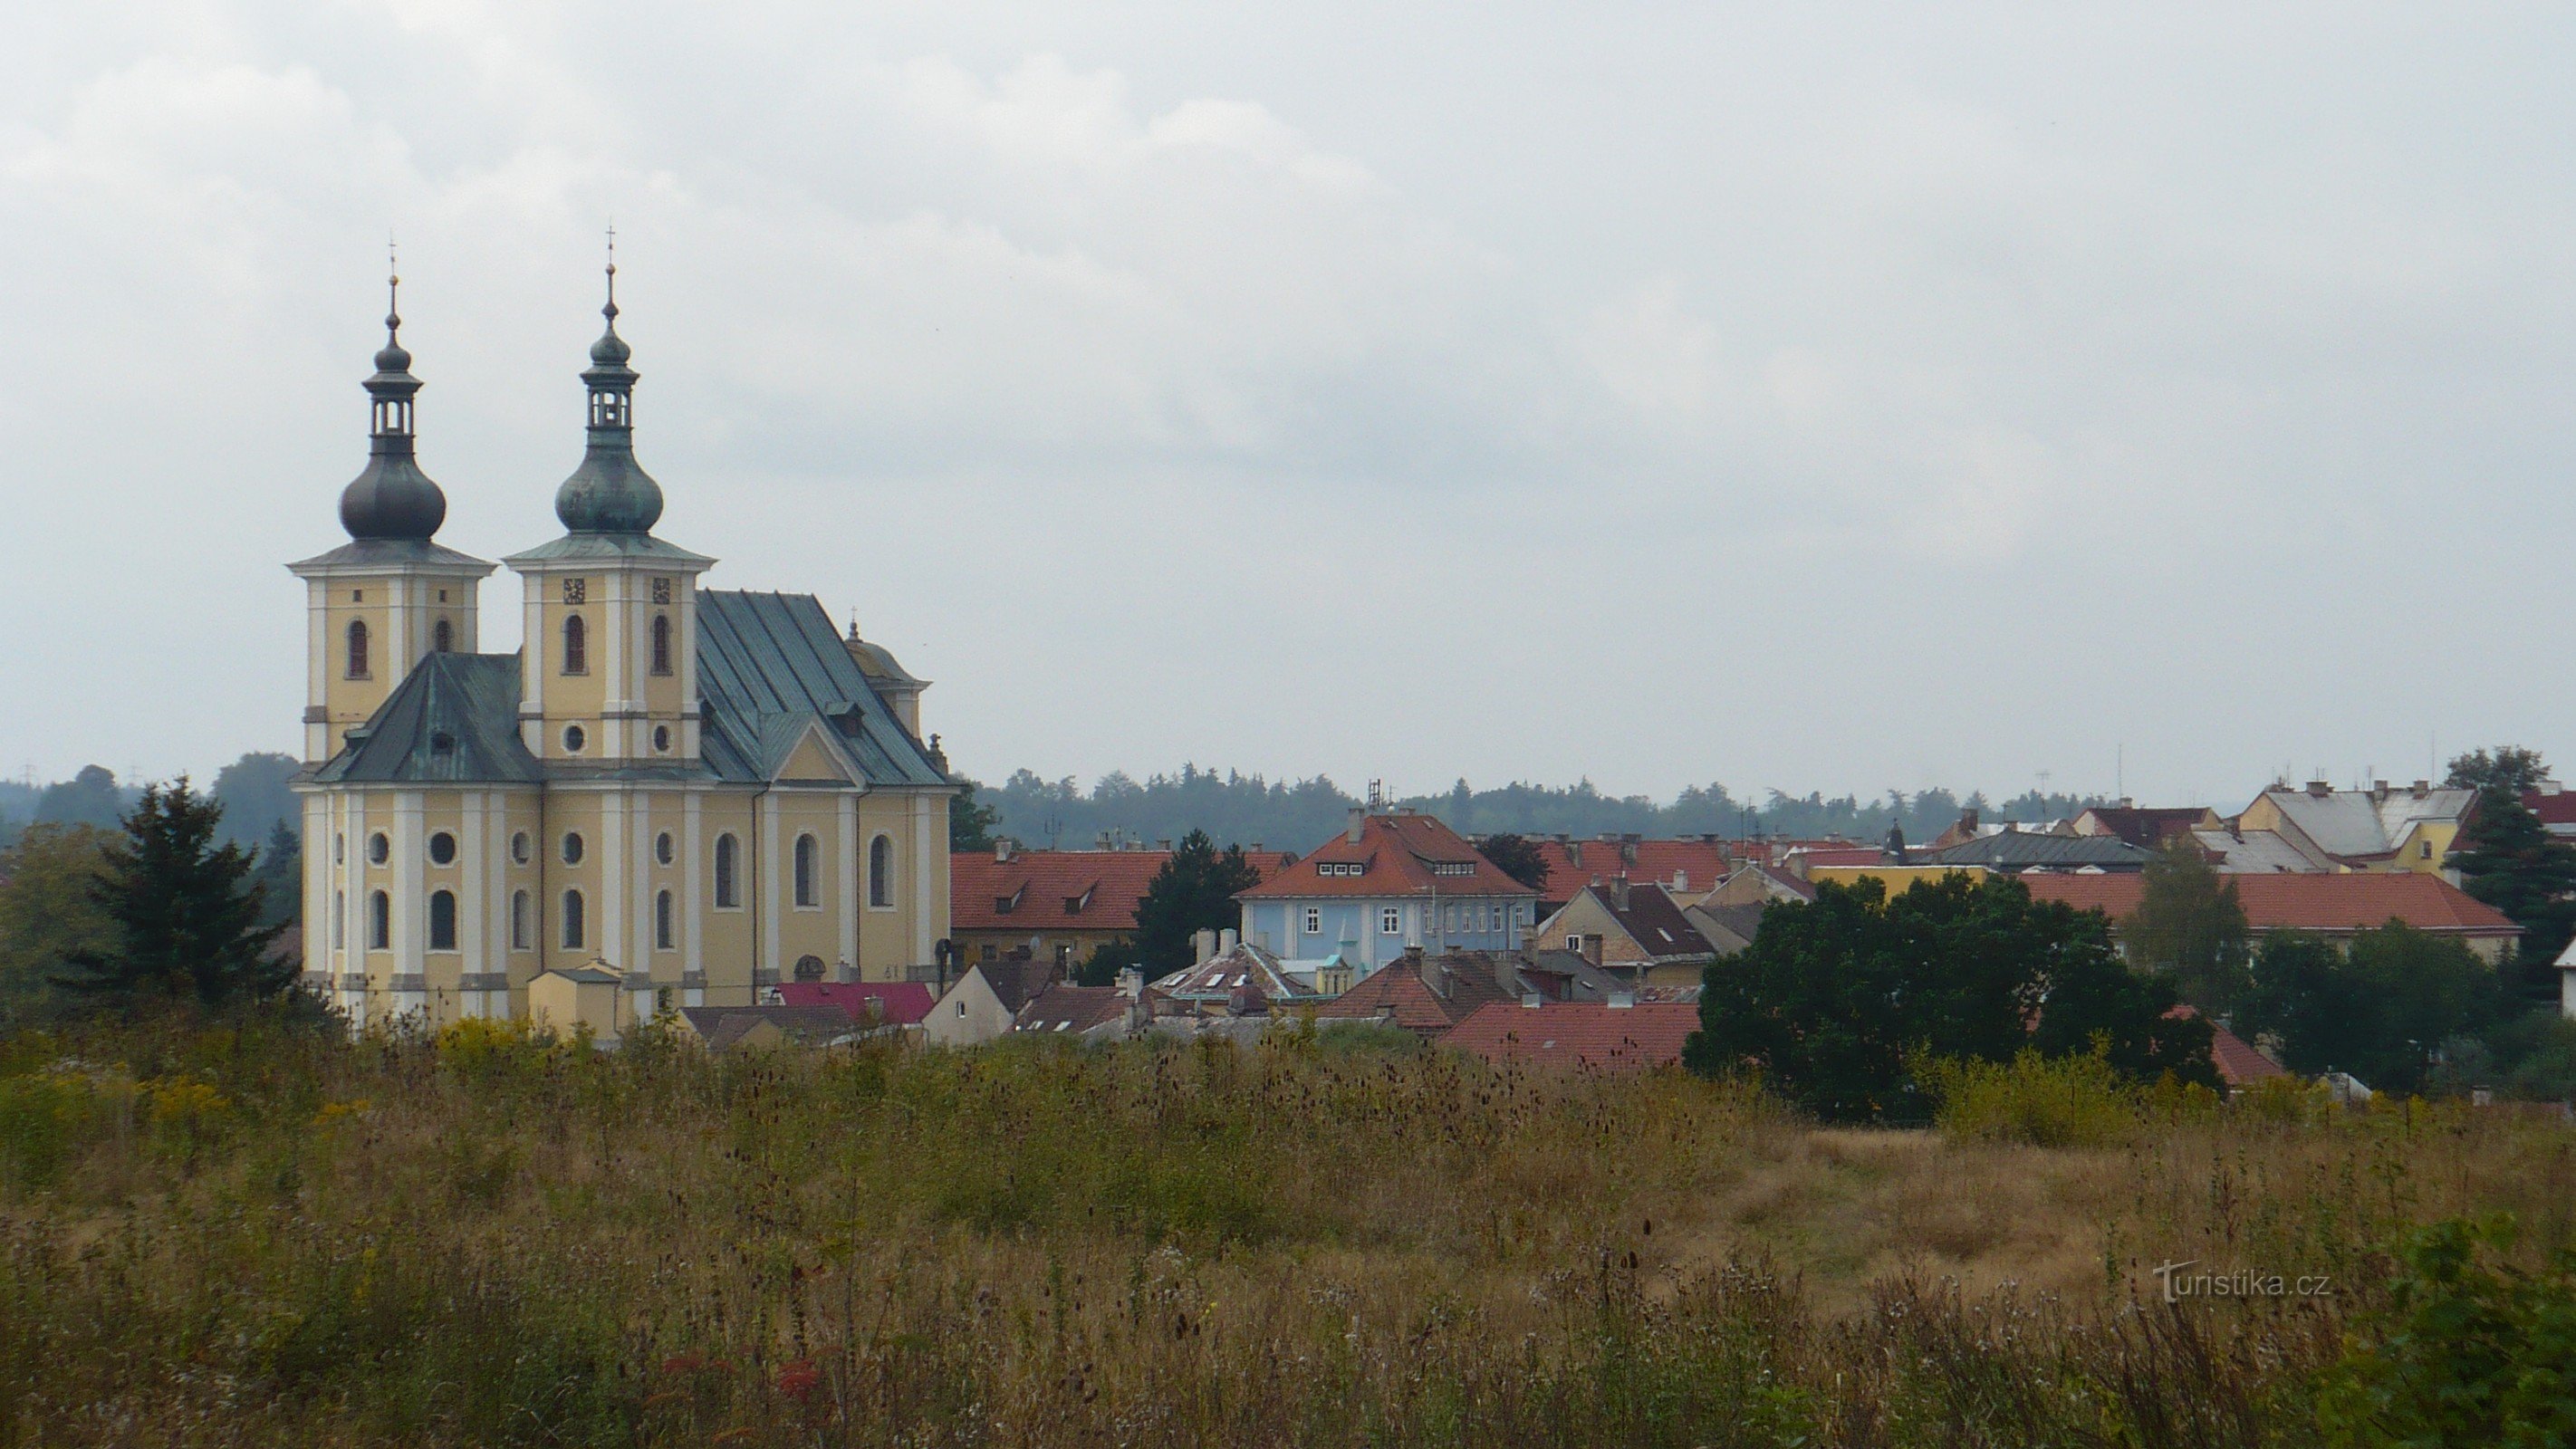 Kynšperk nad Ohří - Nhà thờ Đức Mẹ Hồn Xác Lên Trời